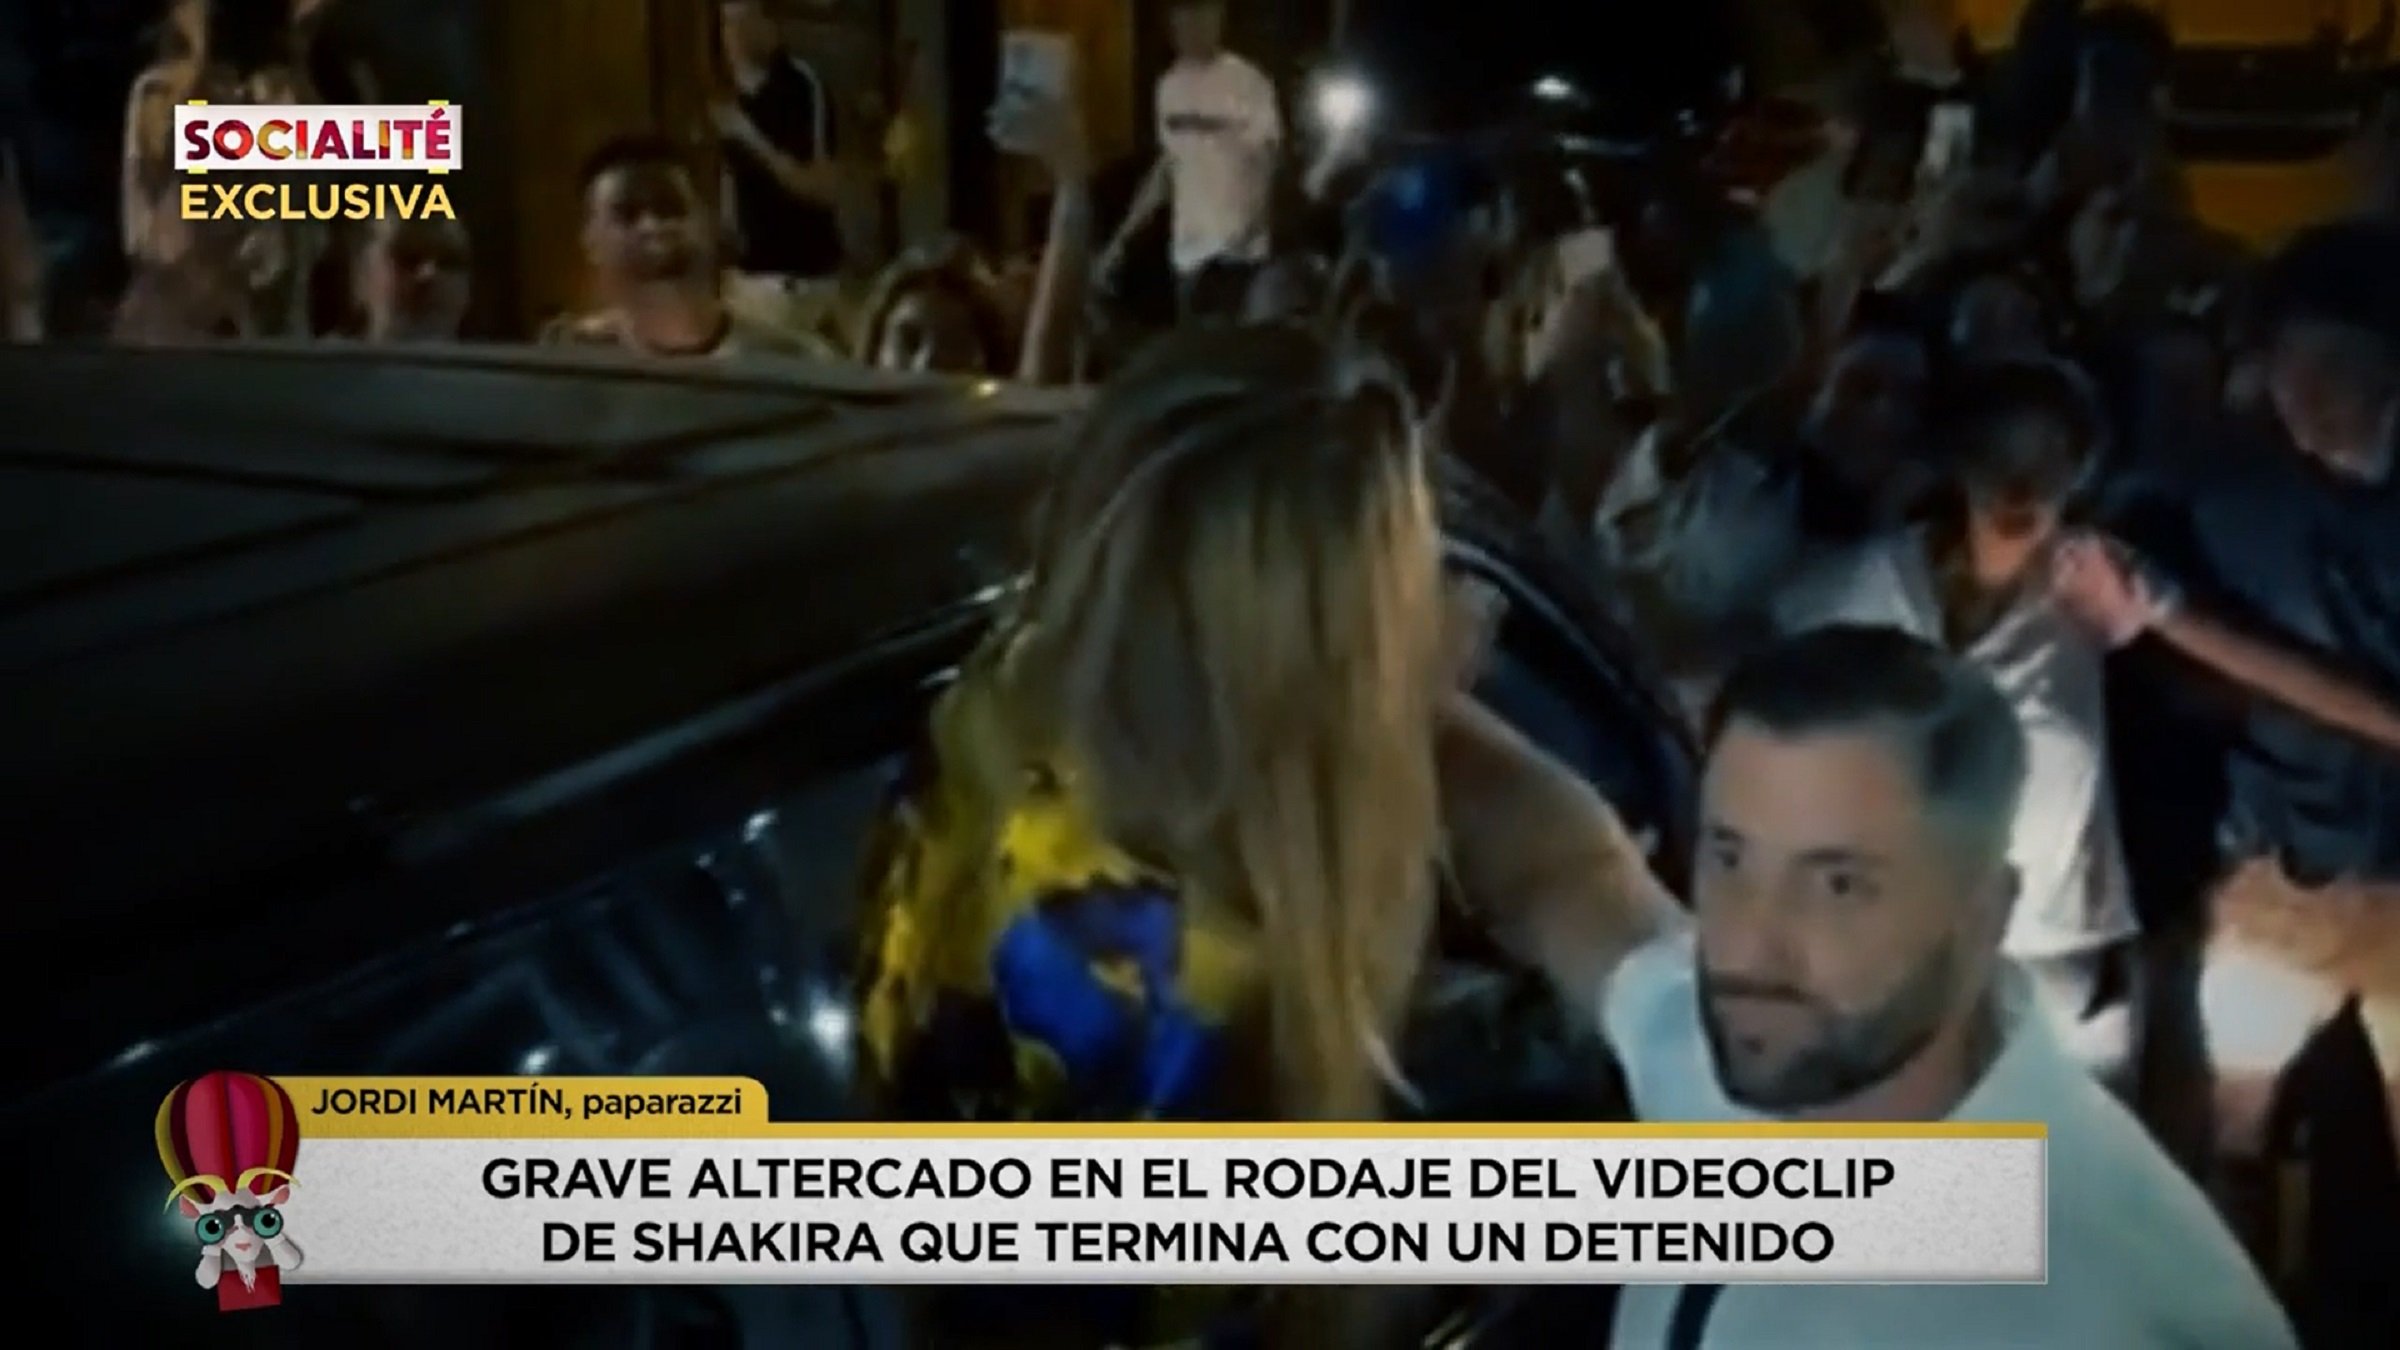 Tensió a Barcelona, Shakira desencaixada, Mossos i crits de "¡Me están pegando!"